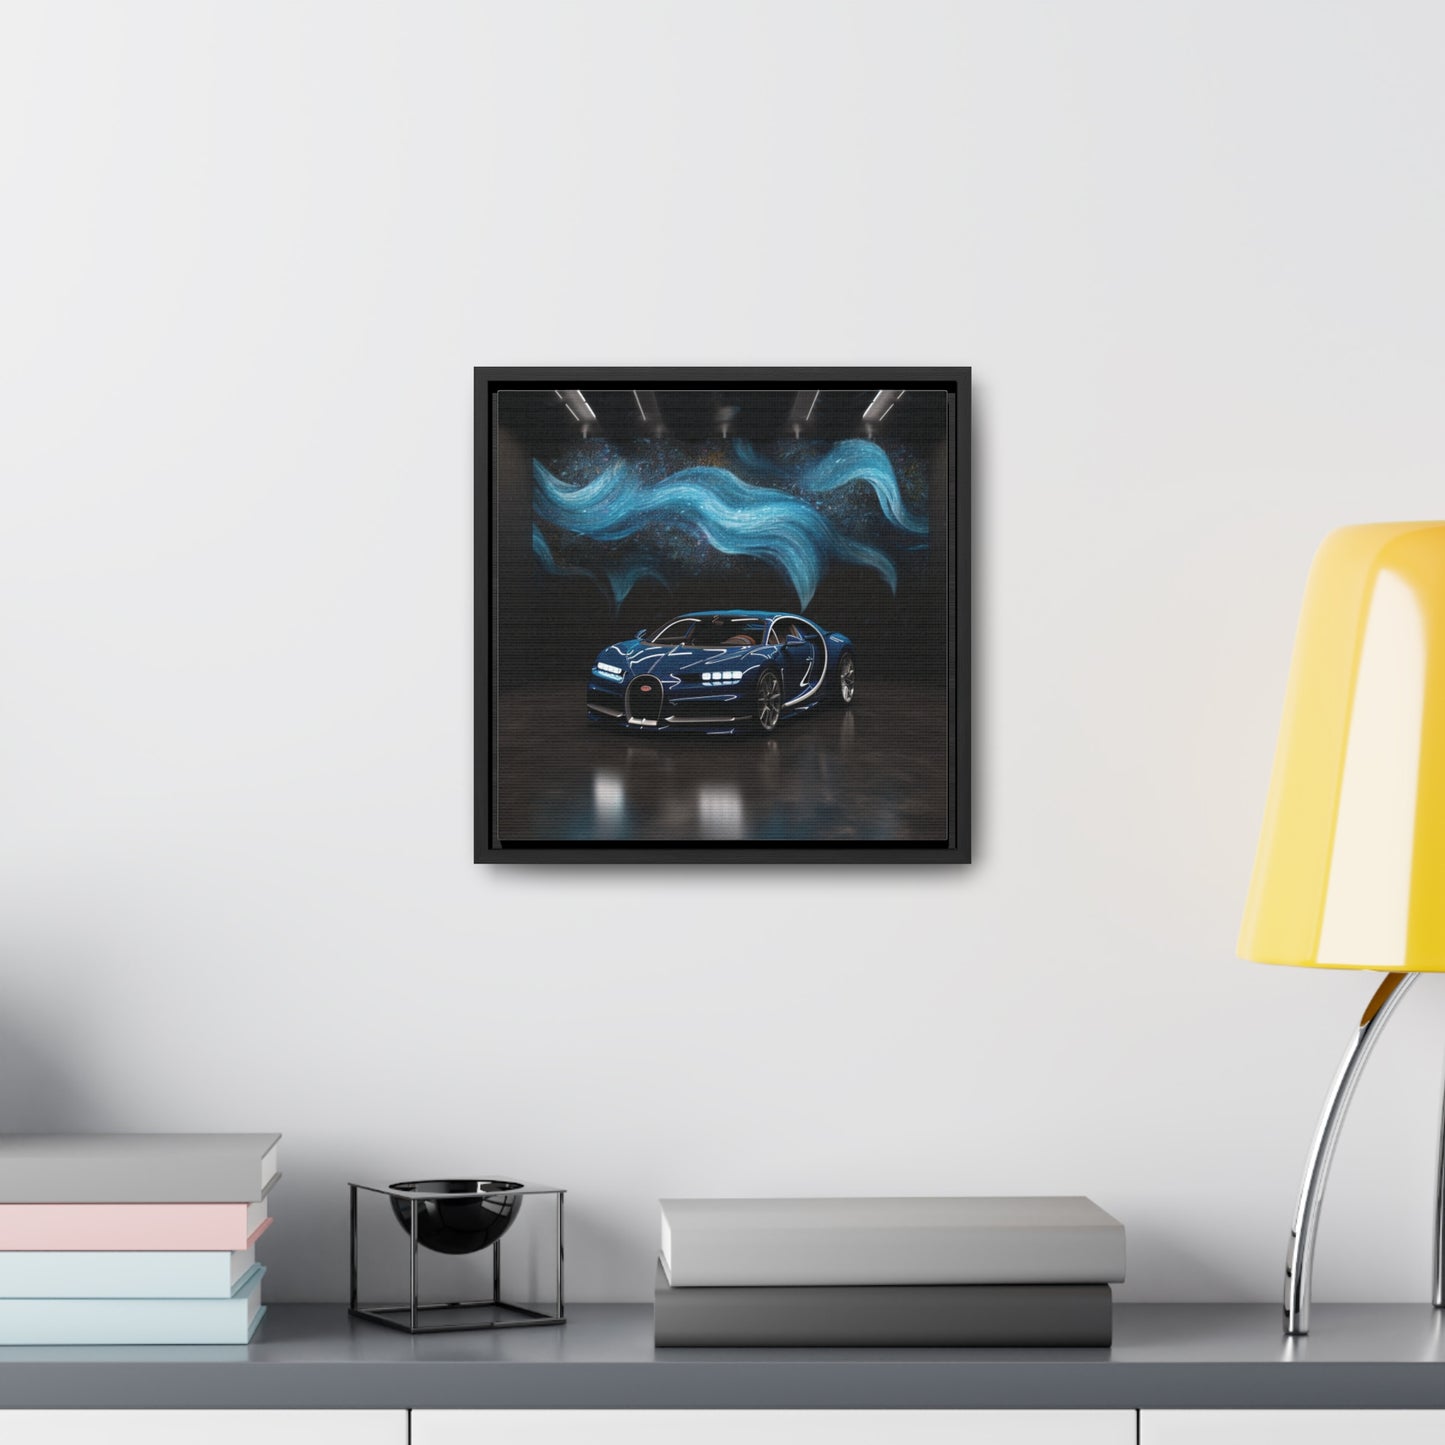 Gallery Canvas Wraps, Square Frame Hyper Bugatti 3